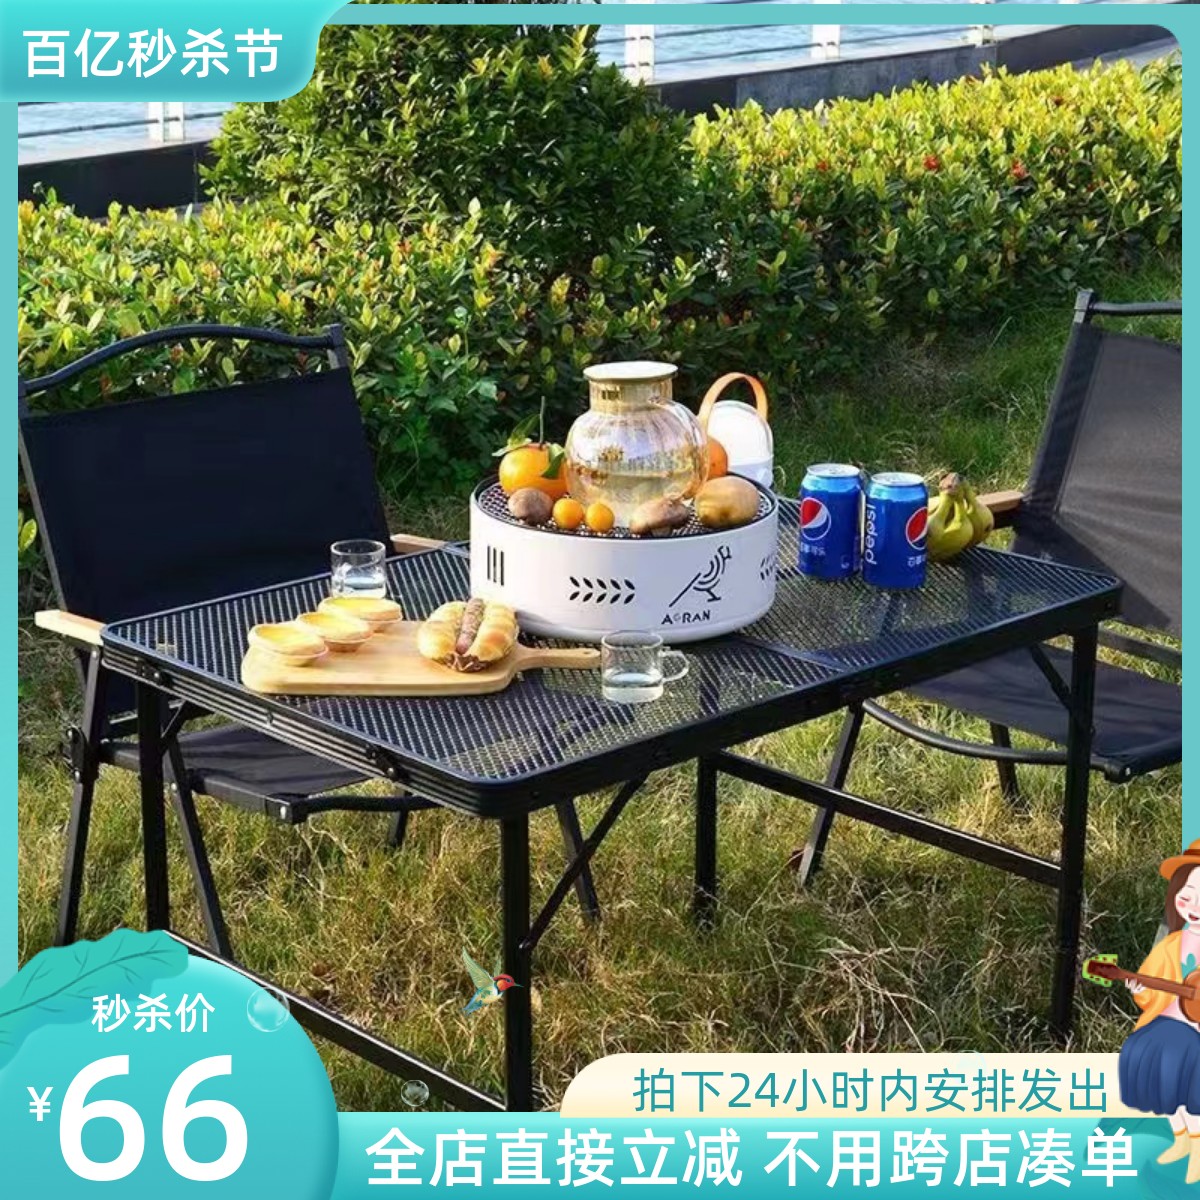 户外折叠桌便携式易收纳野餐铝合金铁网格小型防水防烫茶桌露营桌